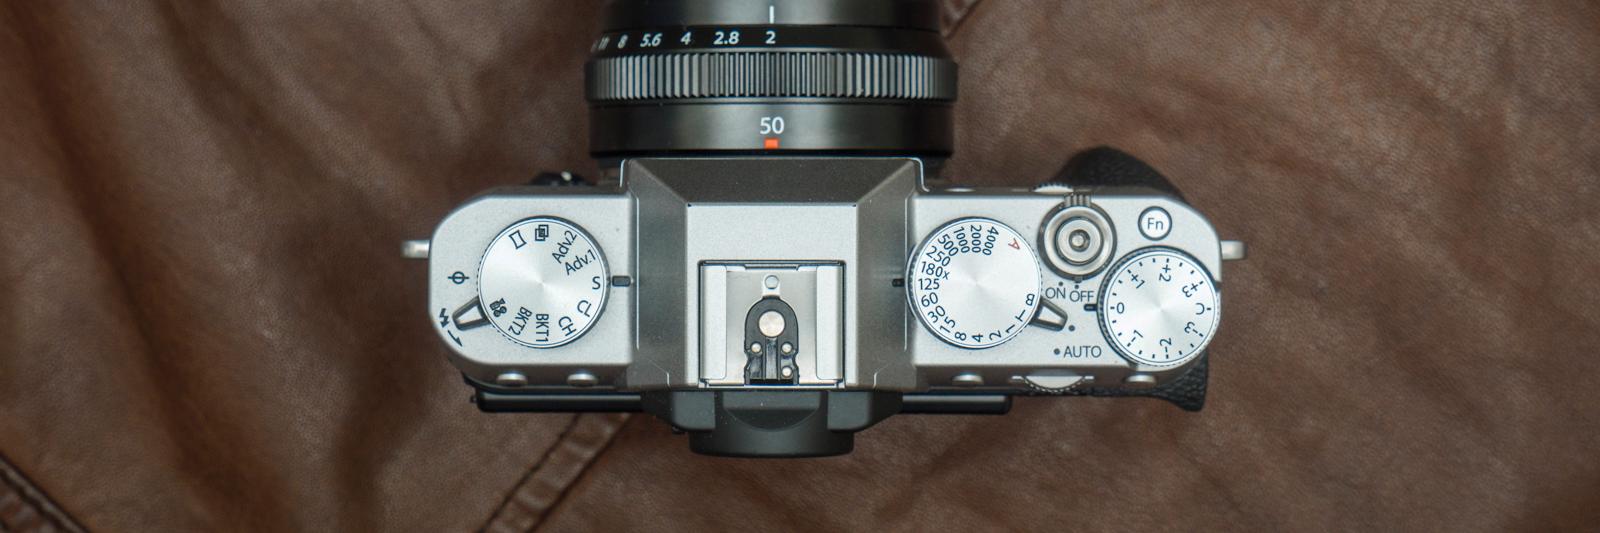 Fujifilm kjører som vanlig på med gjennomført retrobetjening, noe vi liker - det gir en hvis «godfølelse», av å være tettere på fotoprosessen og skapelsen av bildet. Men det er nok litt subjektivt, og passer selvsagt ikke for alle. Bilde: Kristoffer Møllevik